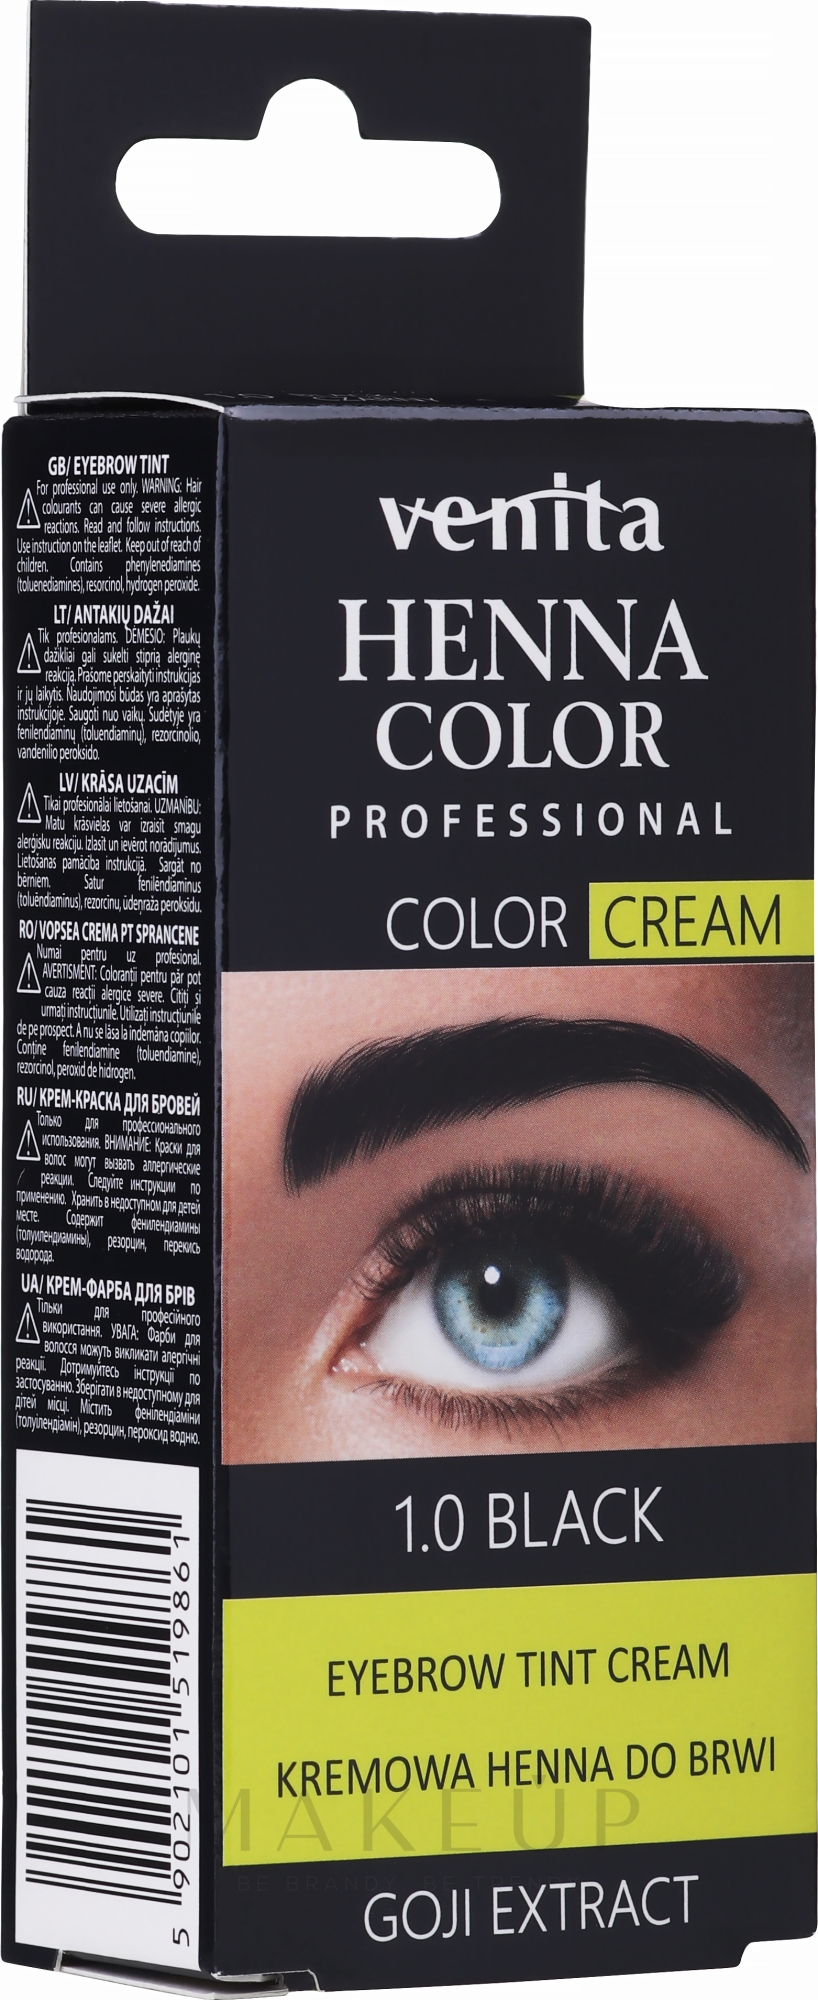 Farbcreme für Augenbrauen mit Henna - Venita Professional Henna Color Cream Eyebrow Tint Cream — Bild 1.0 - Black